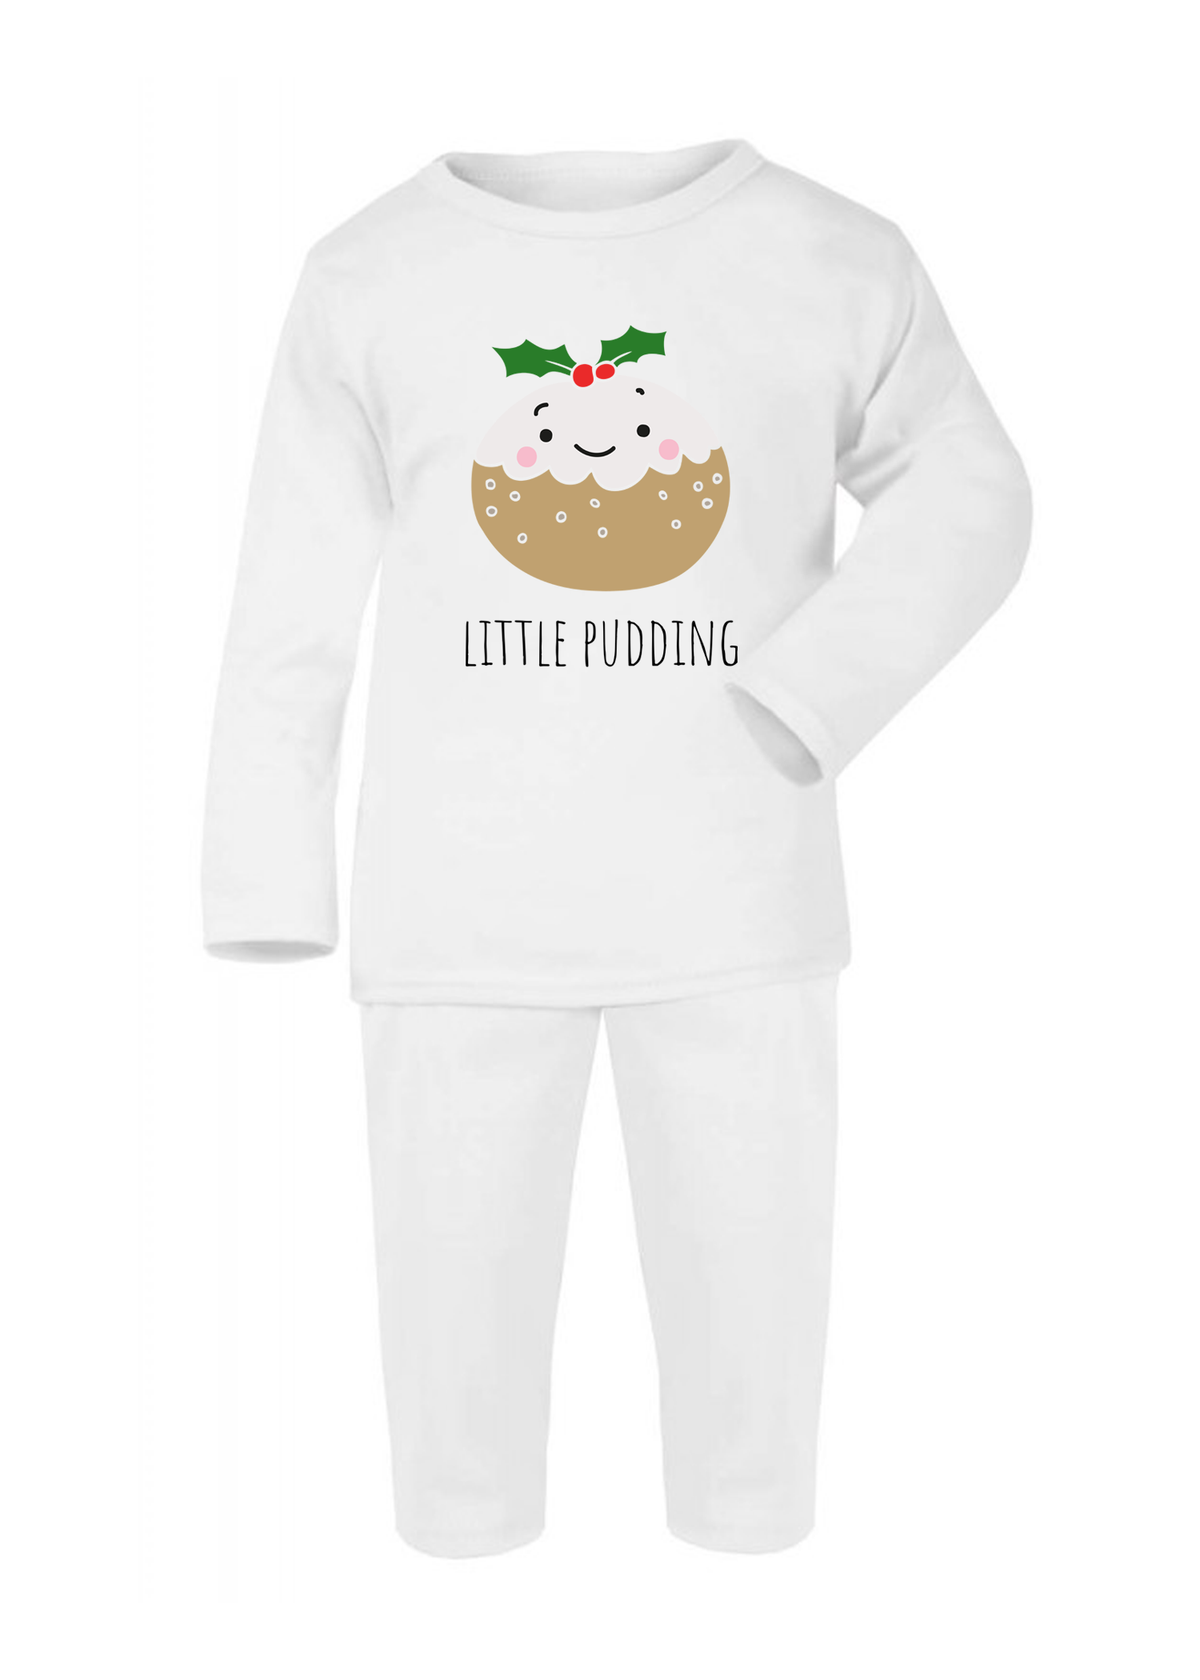 Christmas Printed Pyjamas